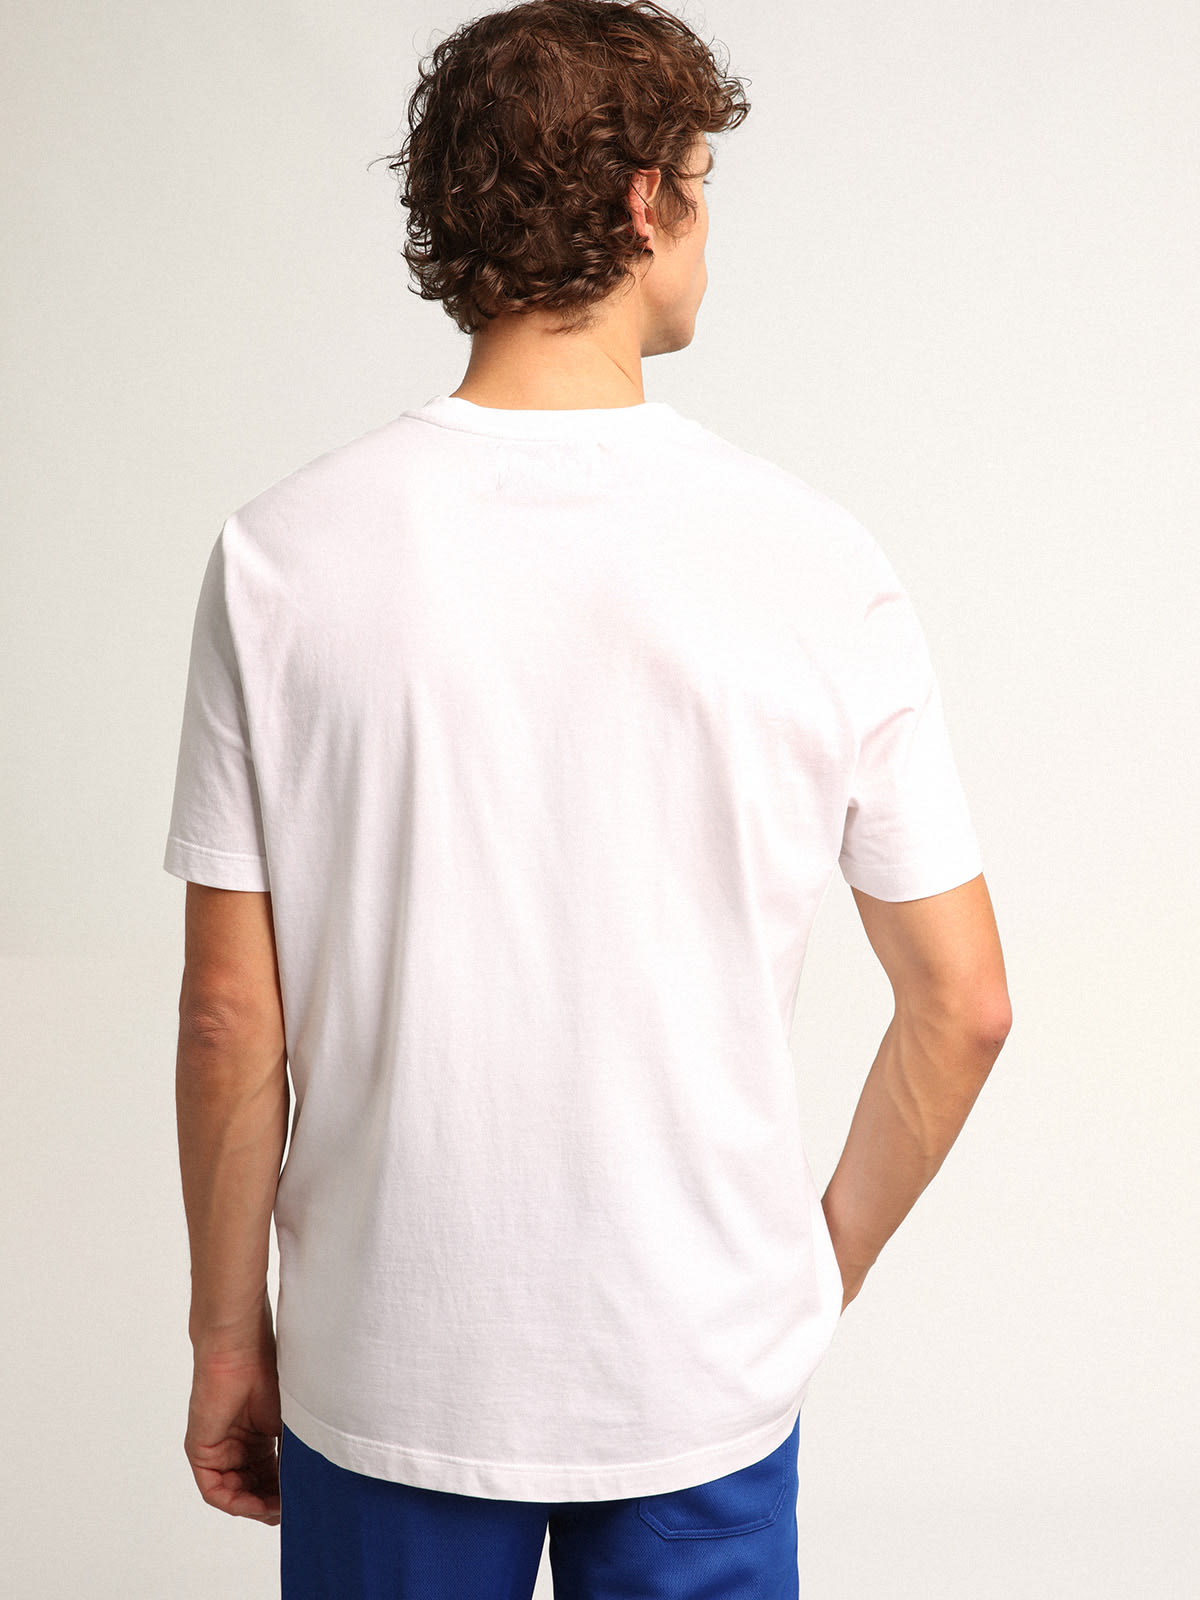 Golden Goose - T-shirt bianca Collezione Star con stella rossa a contrasto sul davanti in 